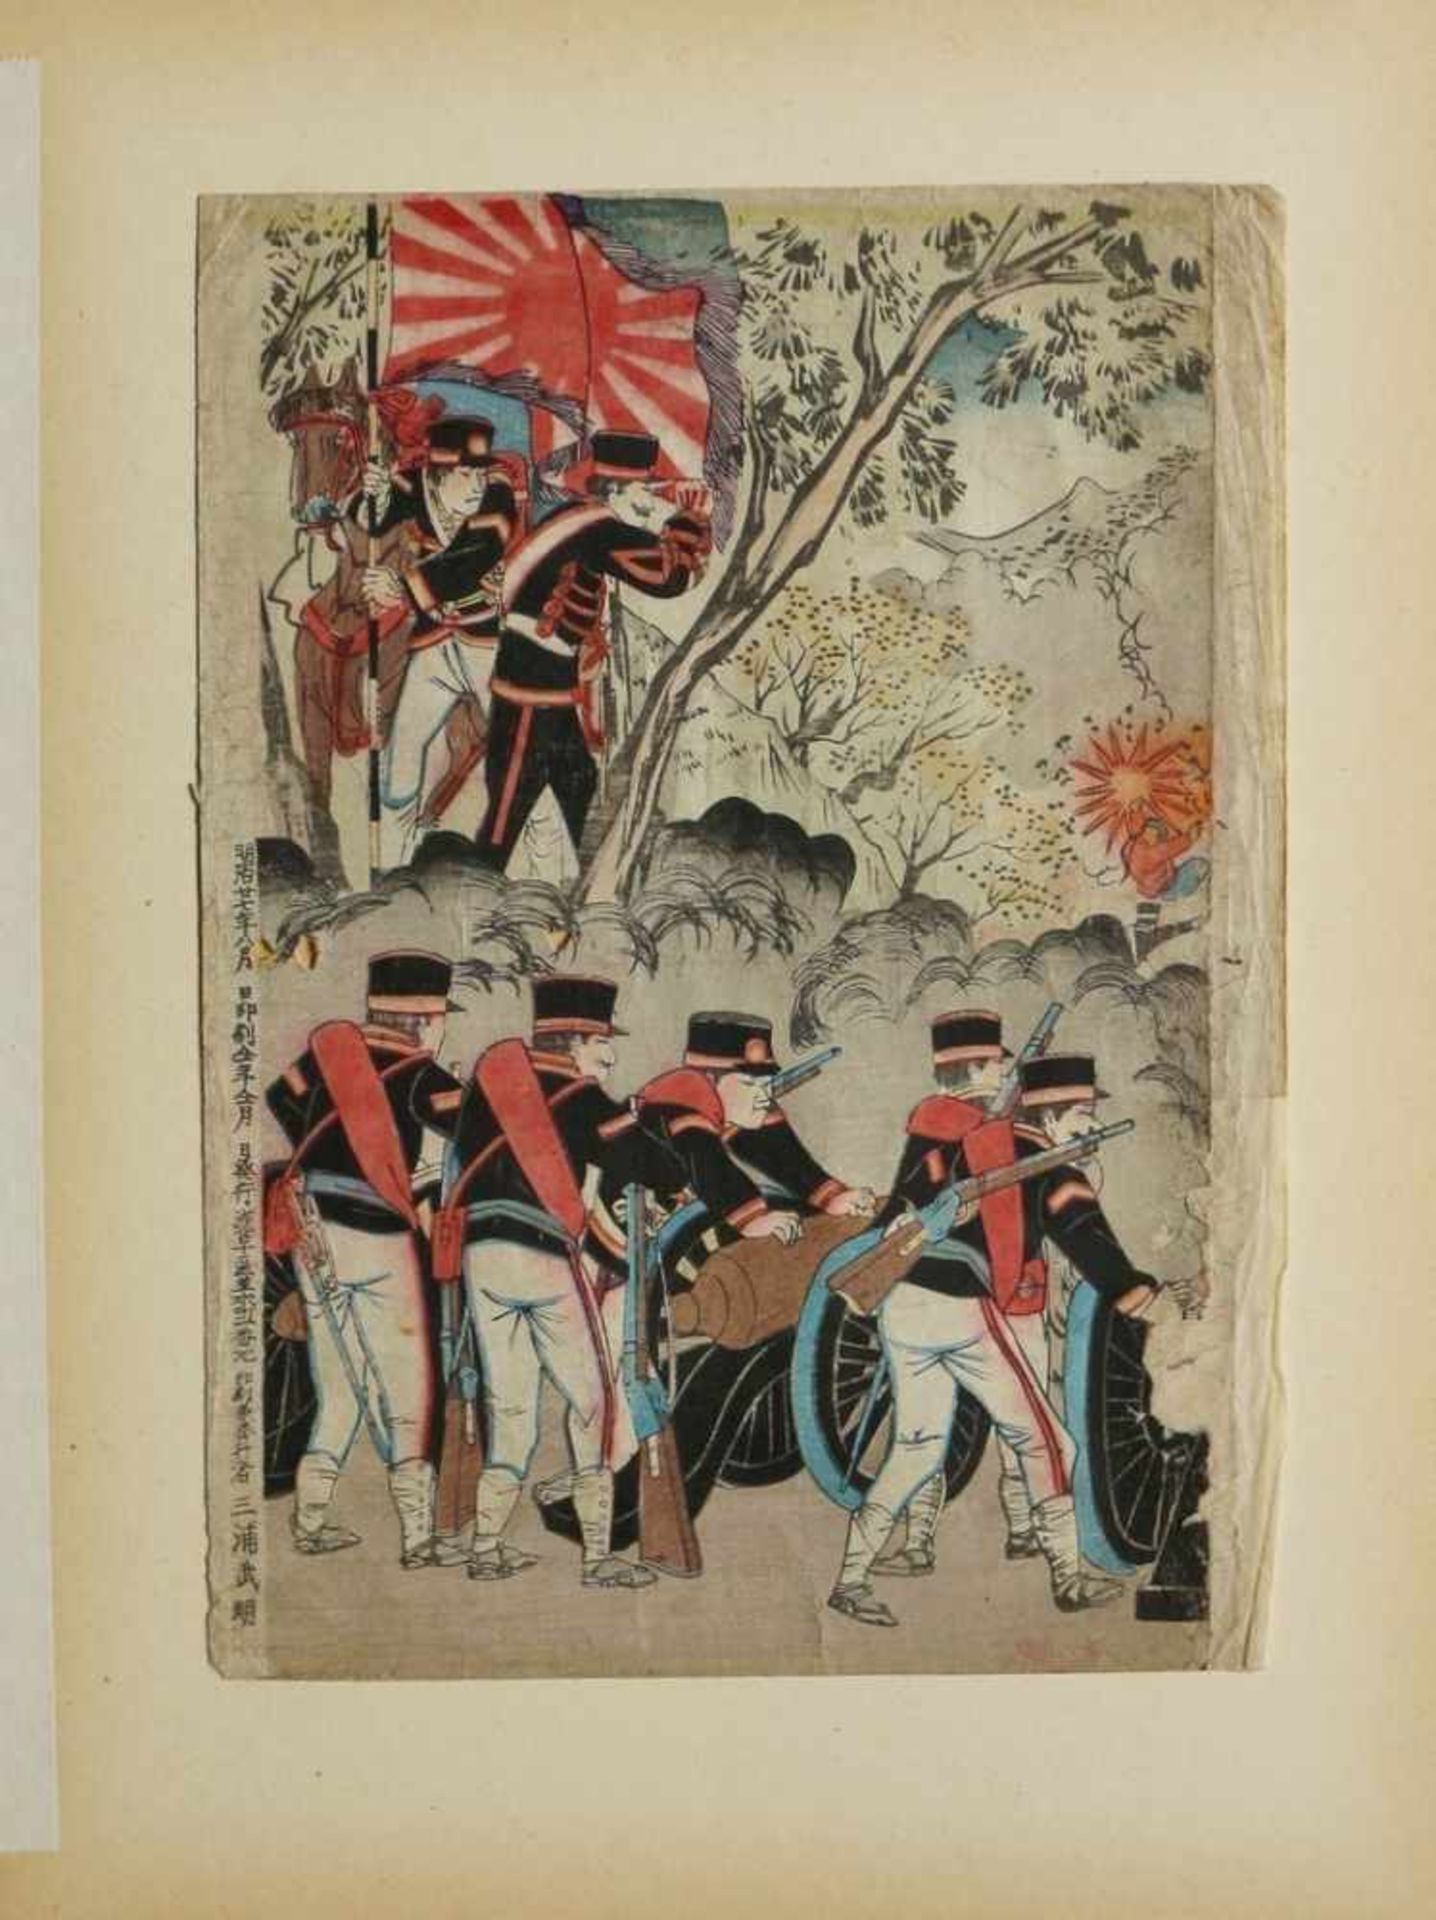 Farbholzschnitt - Japan wohl 19.Jh., seltene Militärdarstellung, wohl Teil eines Senso-e-Triptychons